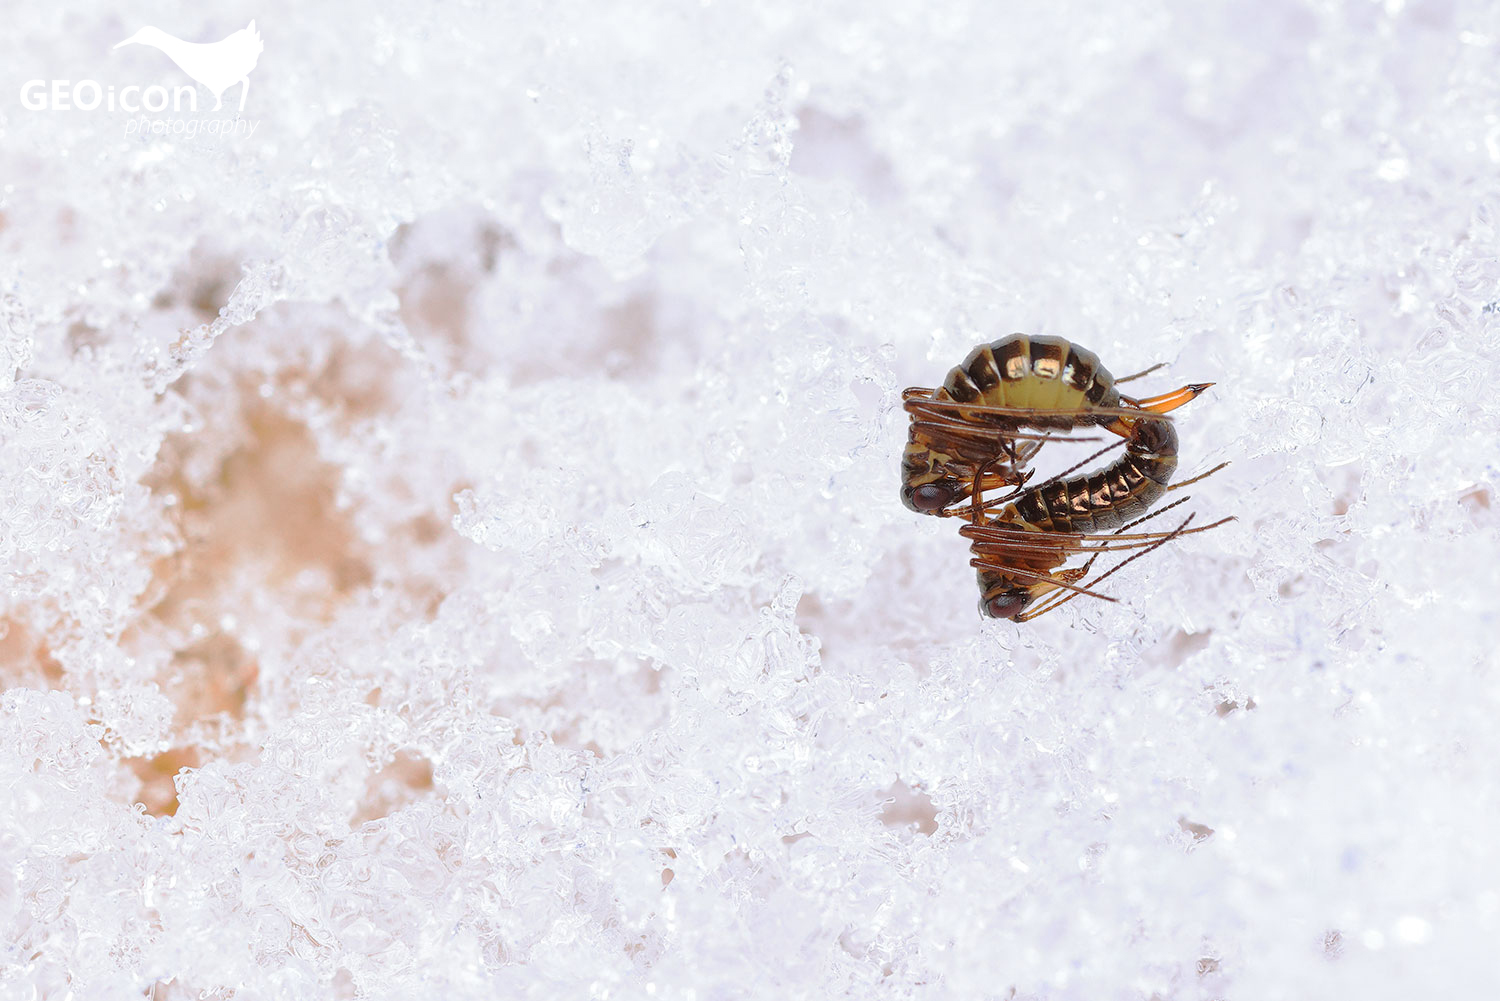 Boreus westwoodi copulation/ sněžnice lesklá páření